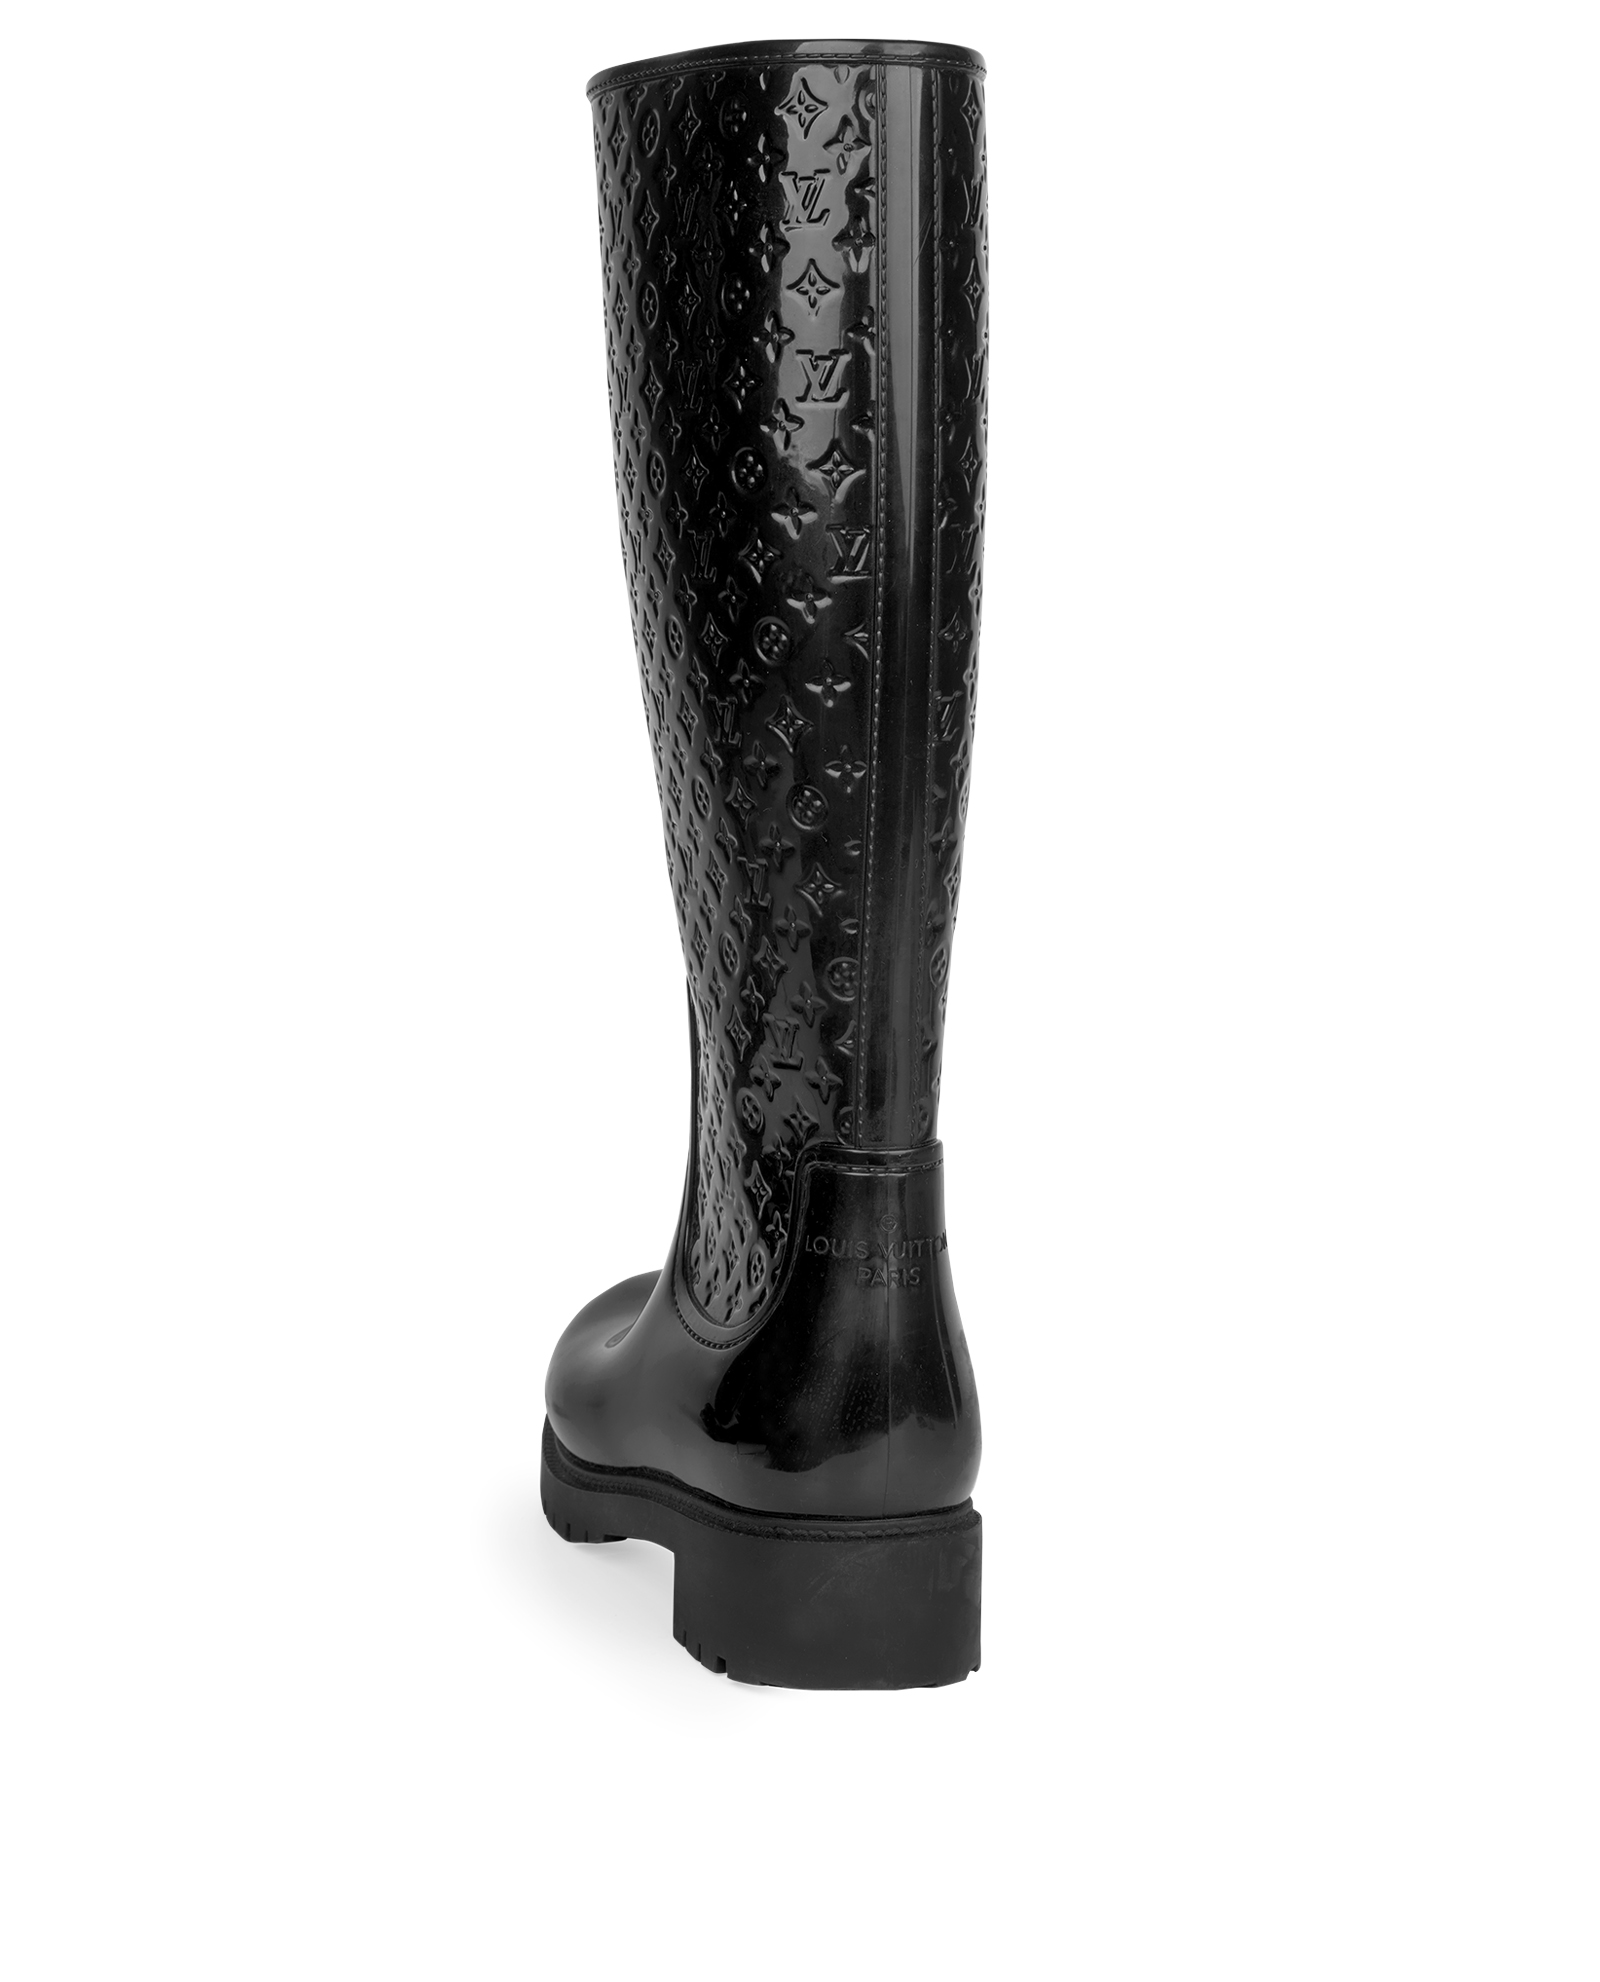 Louis Vuitton Black Monogram Rubber Splash Rain Boots Size 40